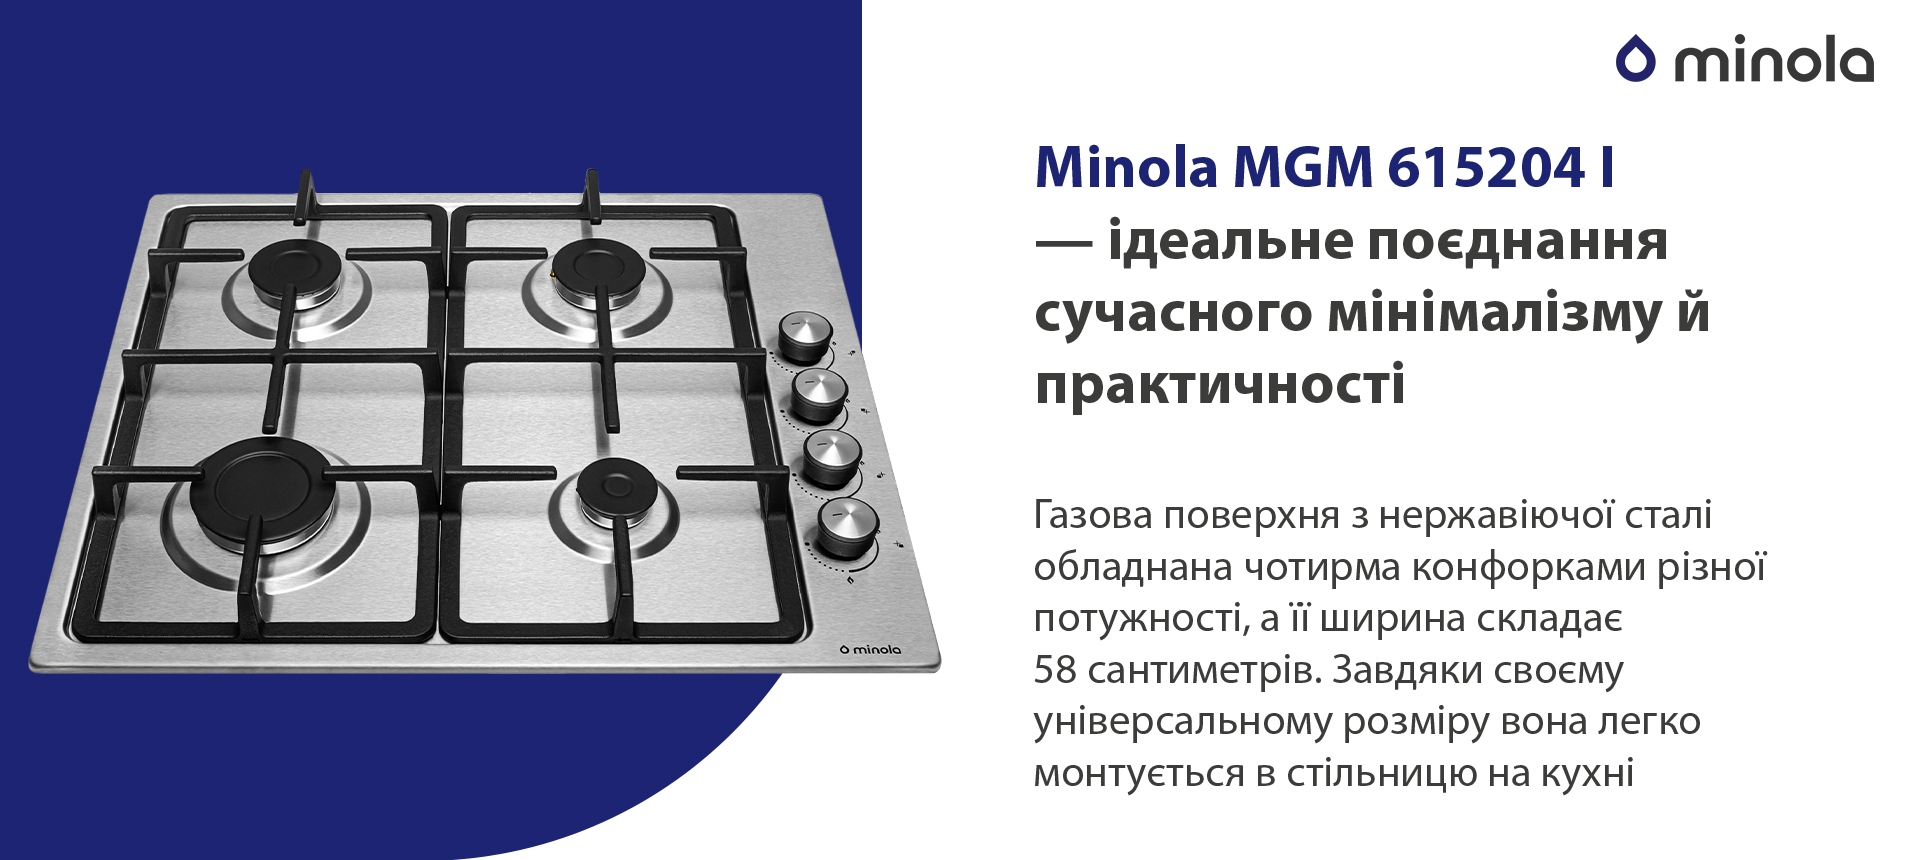 Minola MGM 615204 I в магазині в Києві - фото 10